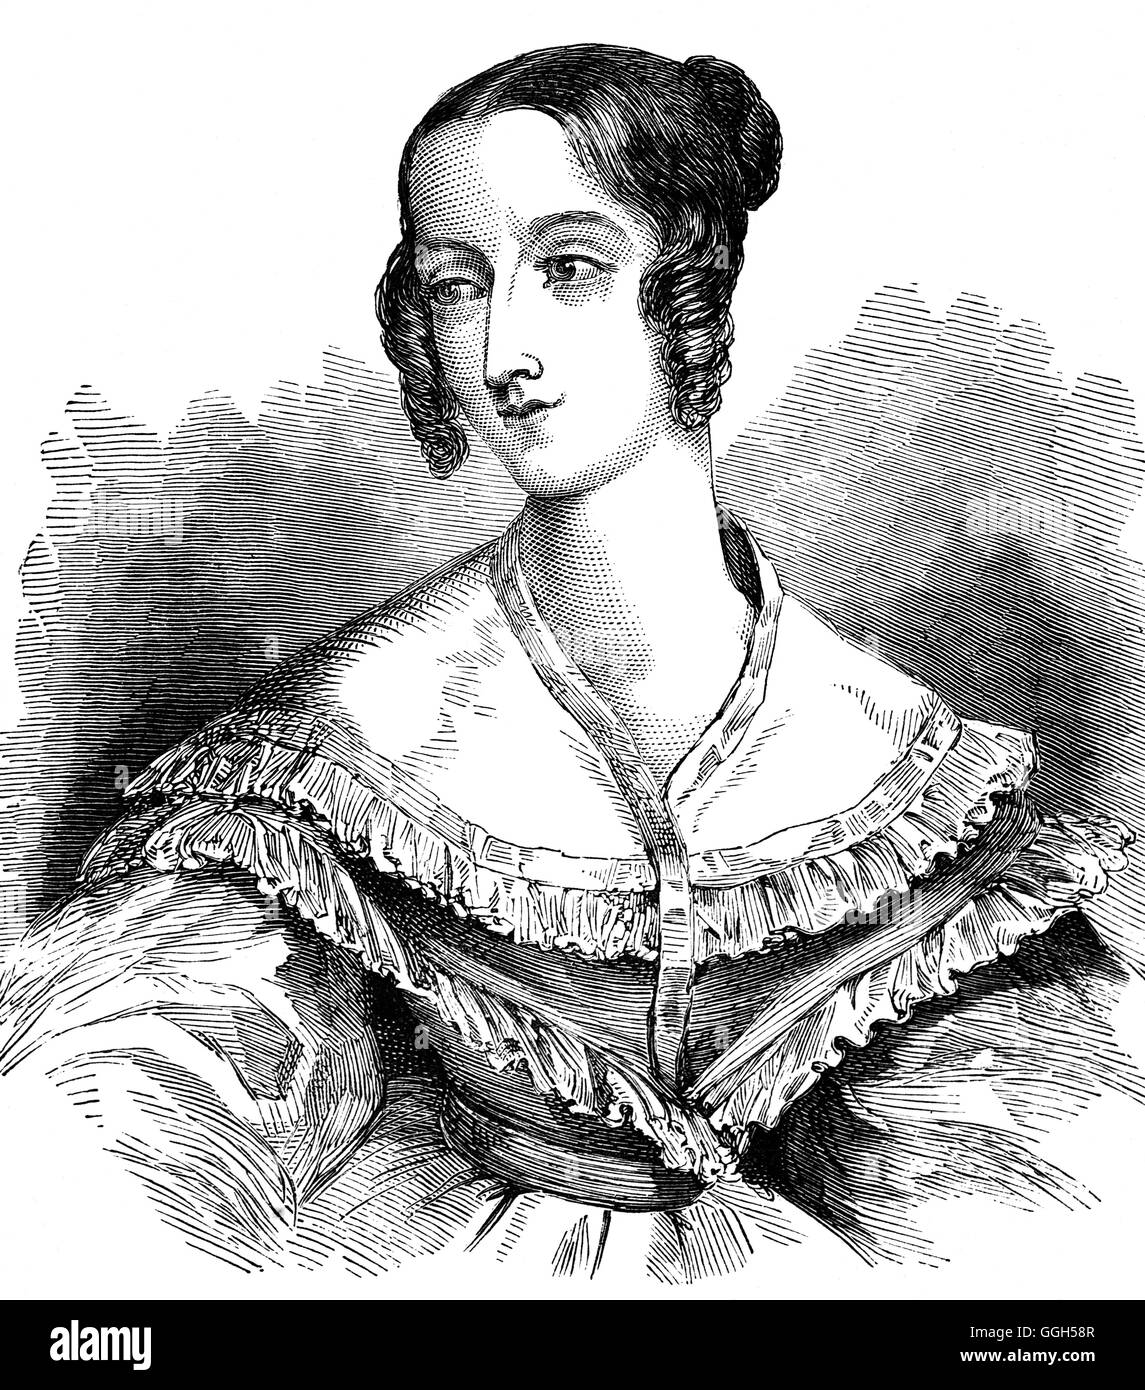 Flore Dame Elizabeth Rawdon-Hastings 1806 - 1839) était un aristocrate britannique et dame d'honneur de la mère de la reine Victoria, la duchesse de Kent. À sa mort en 1839 a fait l'objet d'un scandale judiciaire qui a donné une image négative de la Reine. Banque D'Images